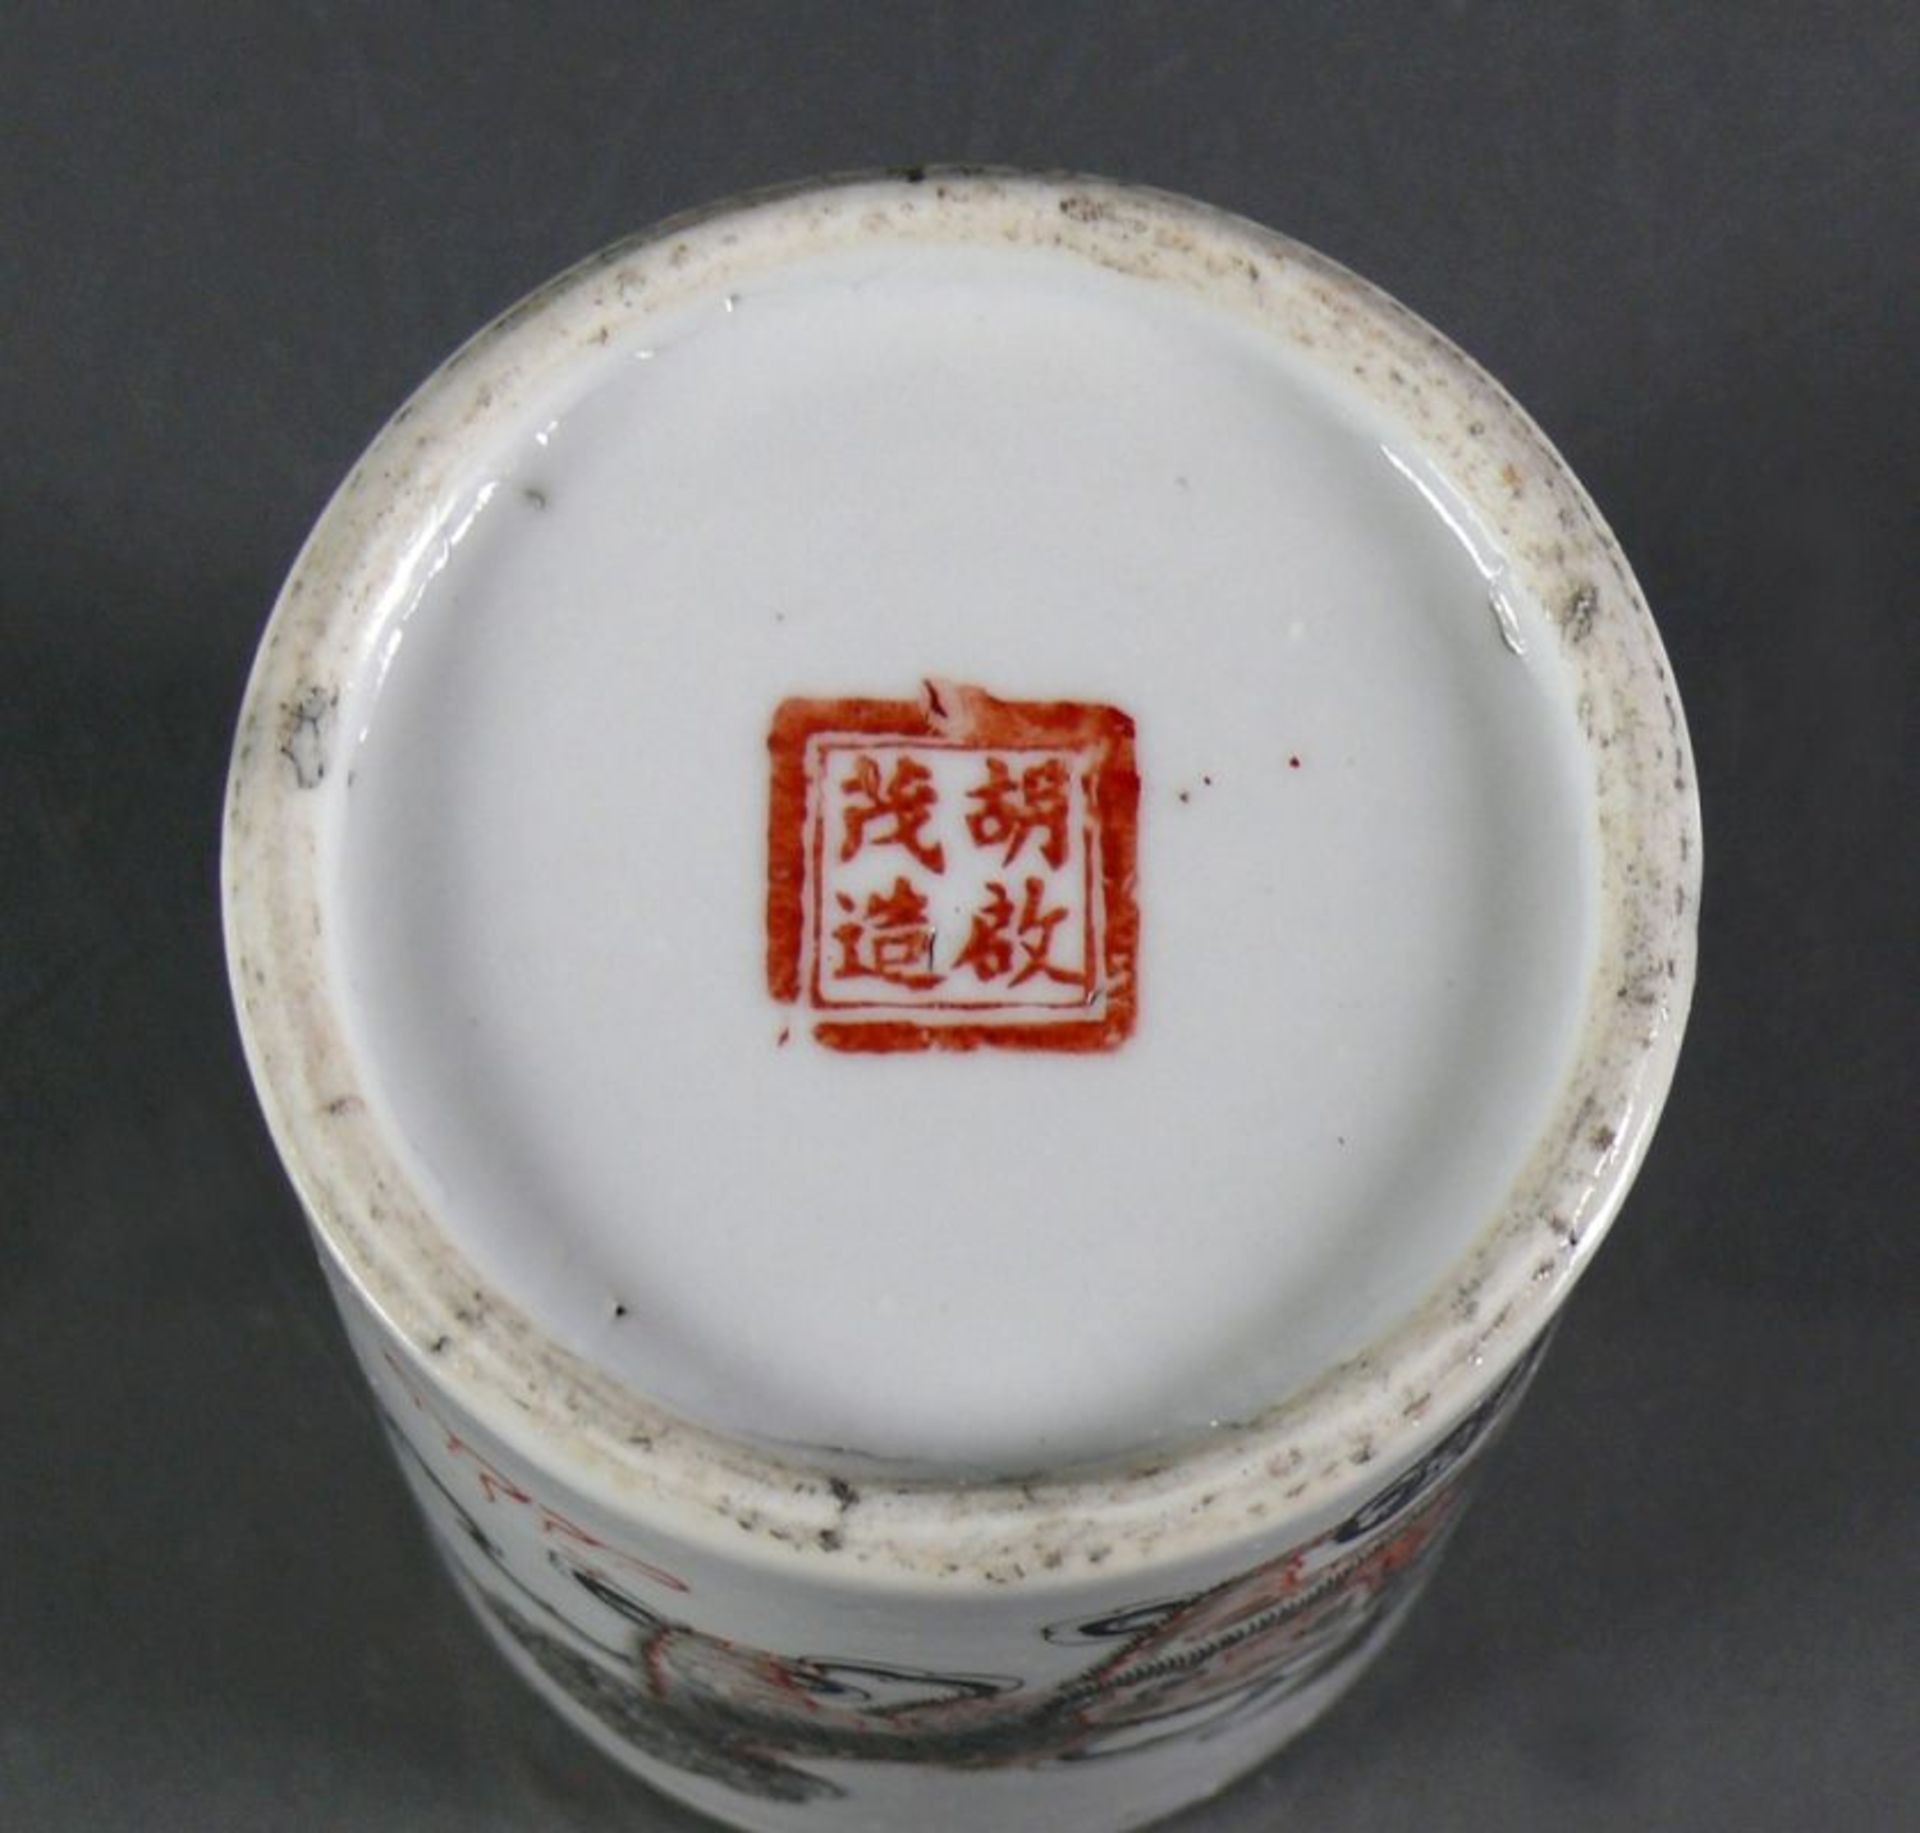 2 Pinselbecher (China)Keramik; jeweils zyl. Korpus; blauer Landschaftsdekor bzw. Drachendekor in - Bild 2 aus 2